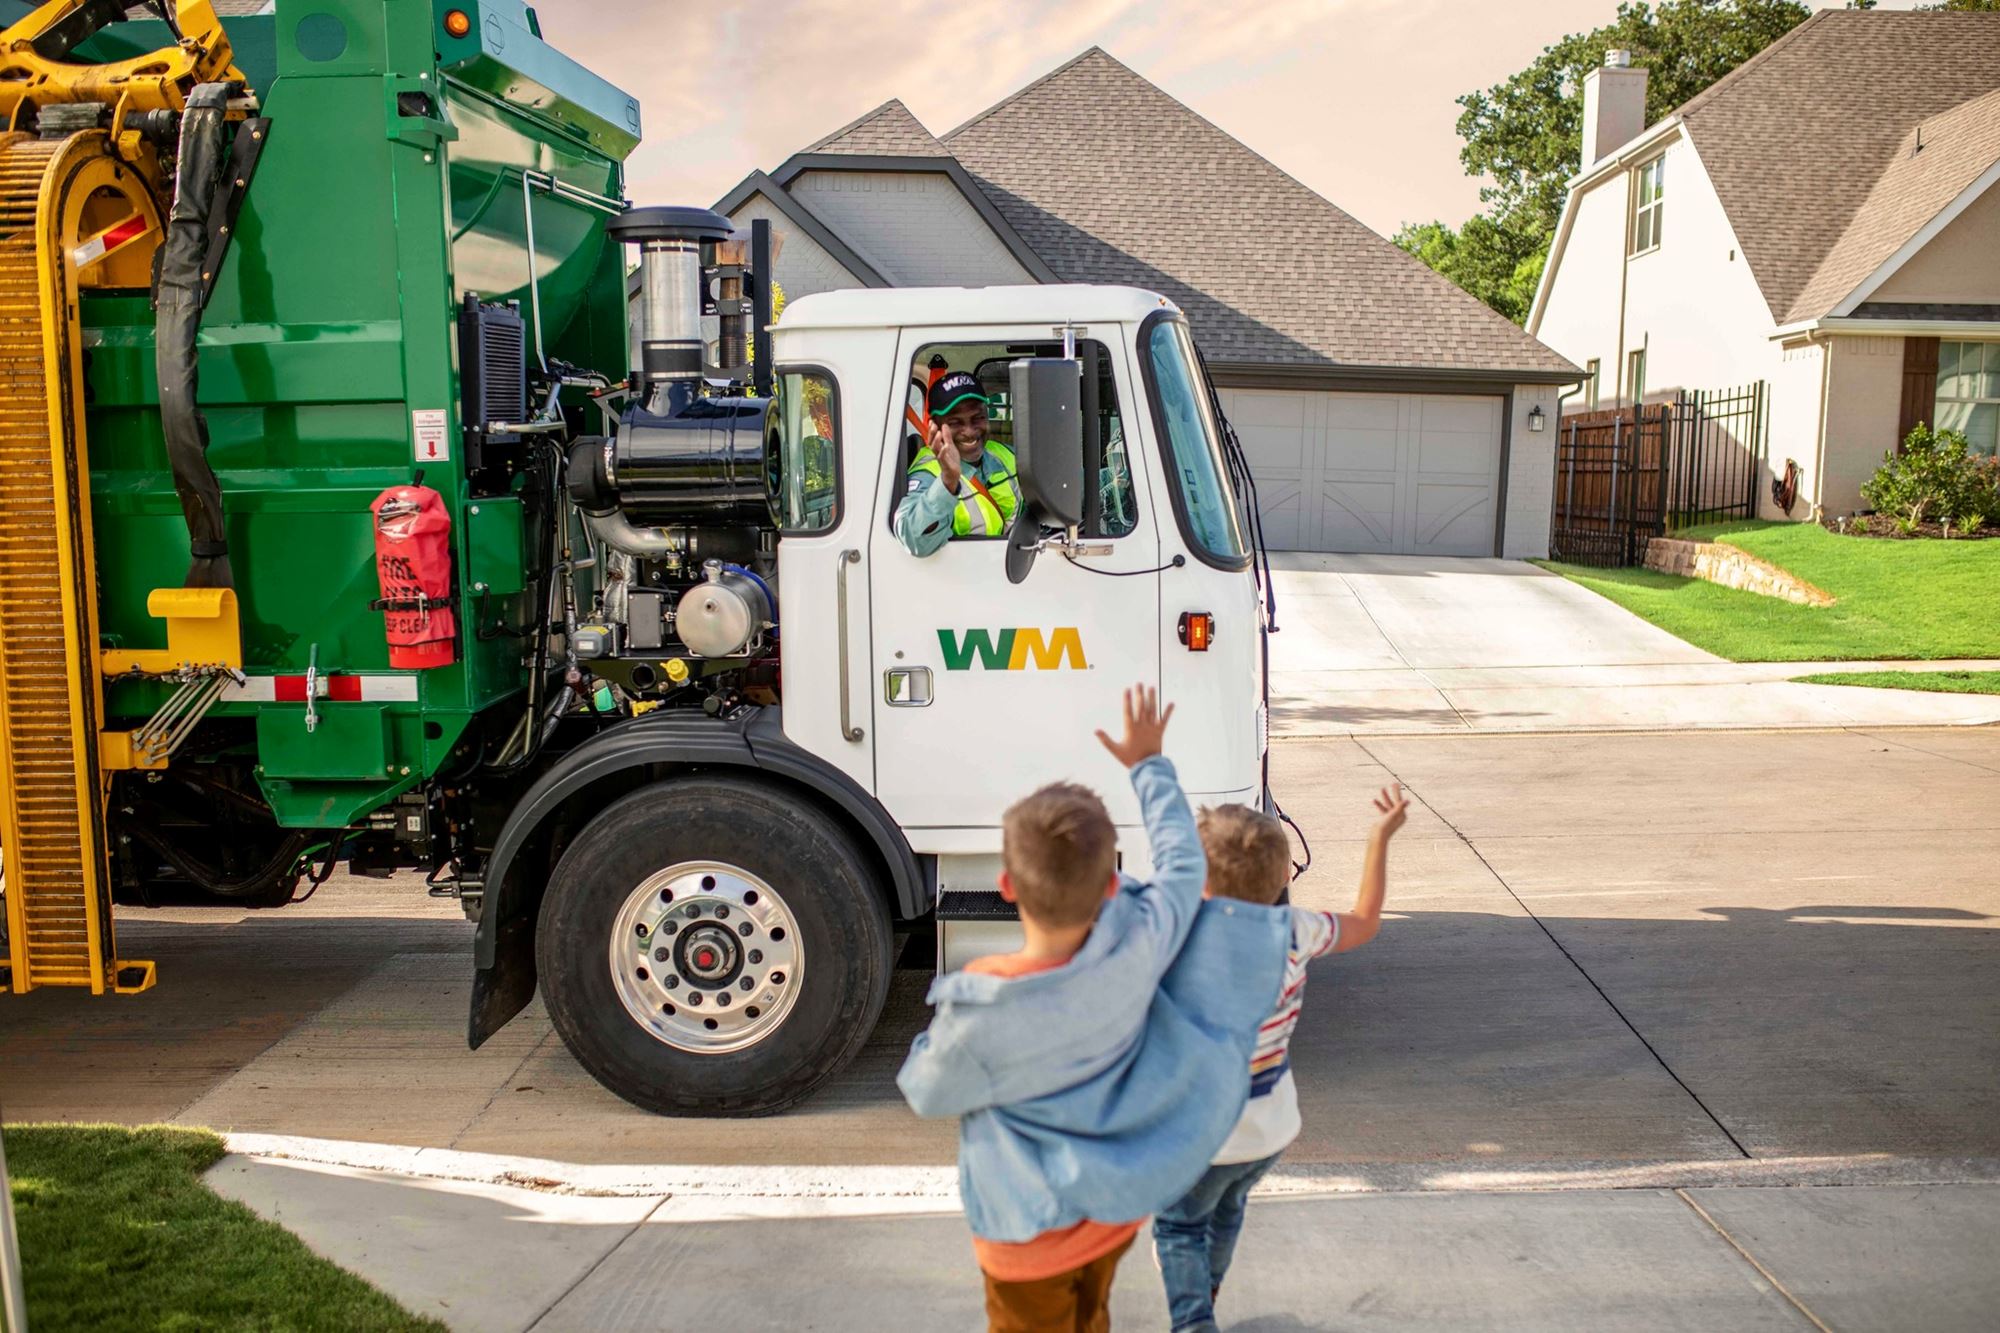 2 children waving at a Waste Management garbage truck .